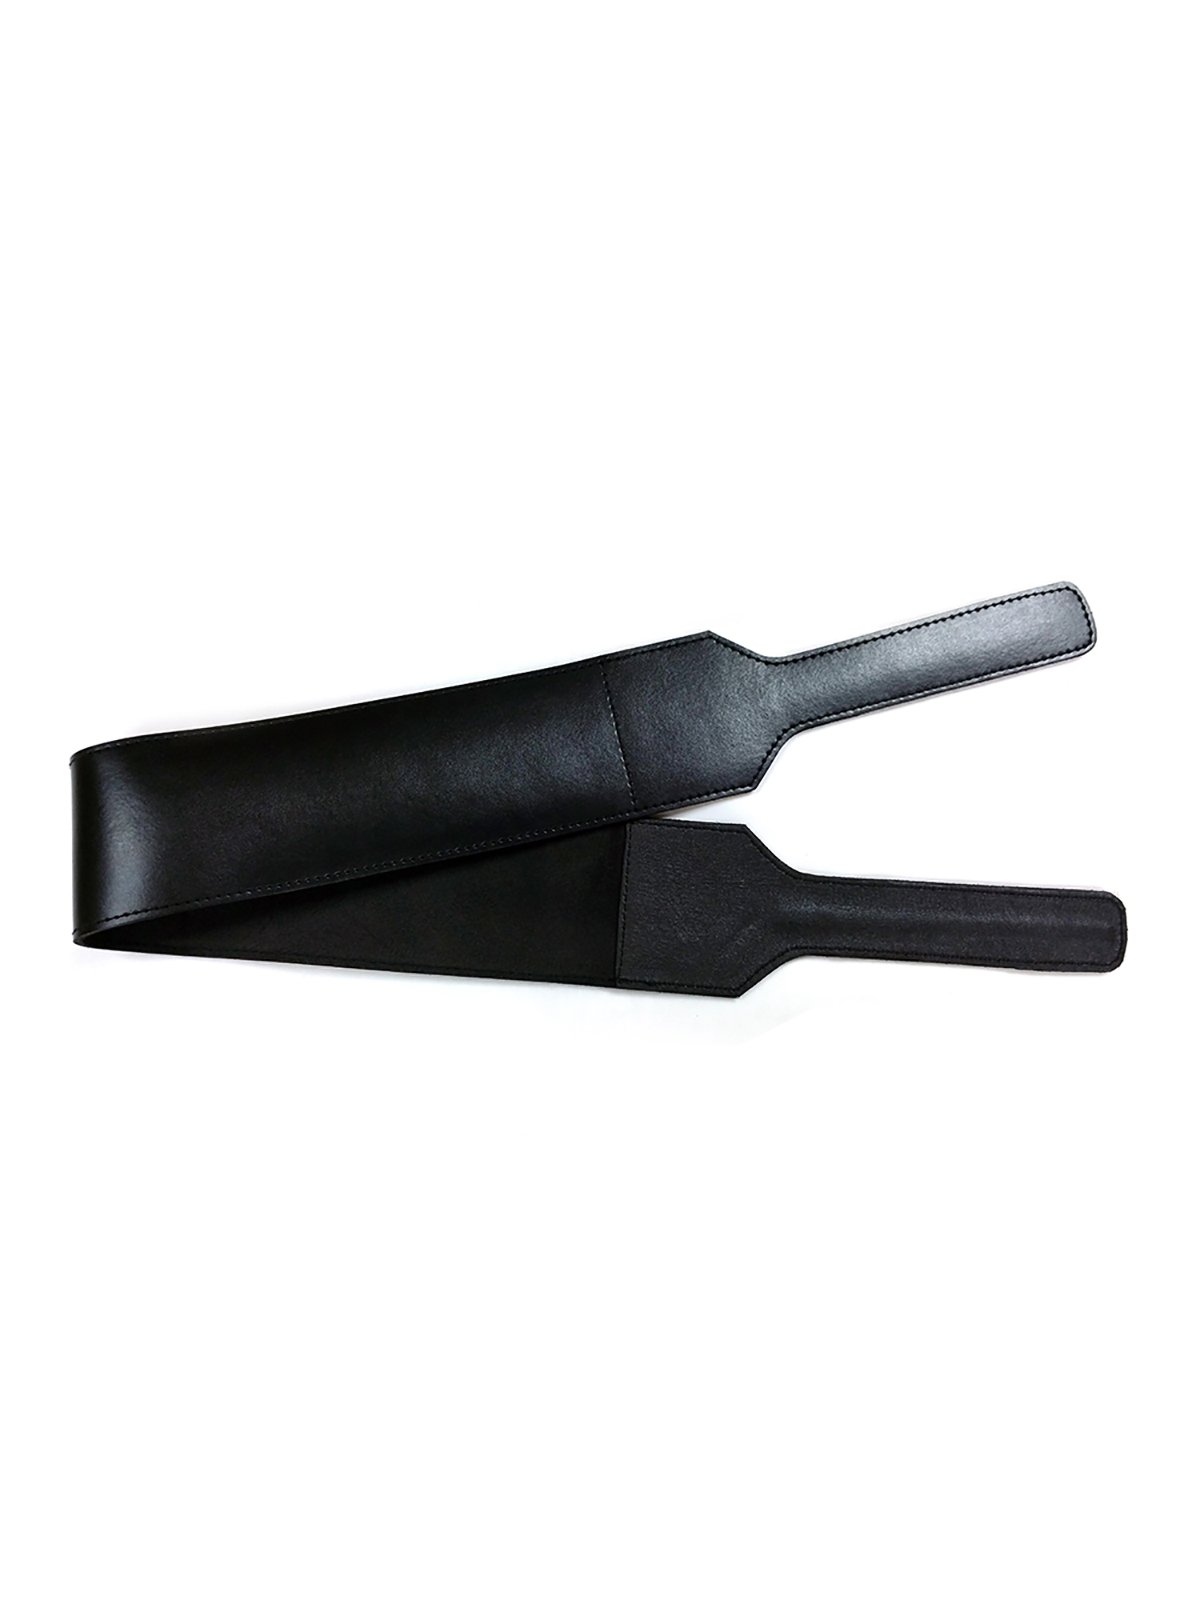 Leather Folded Open Paddle | Black